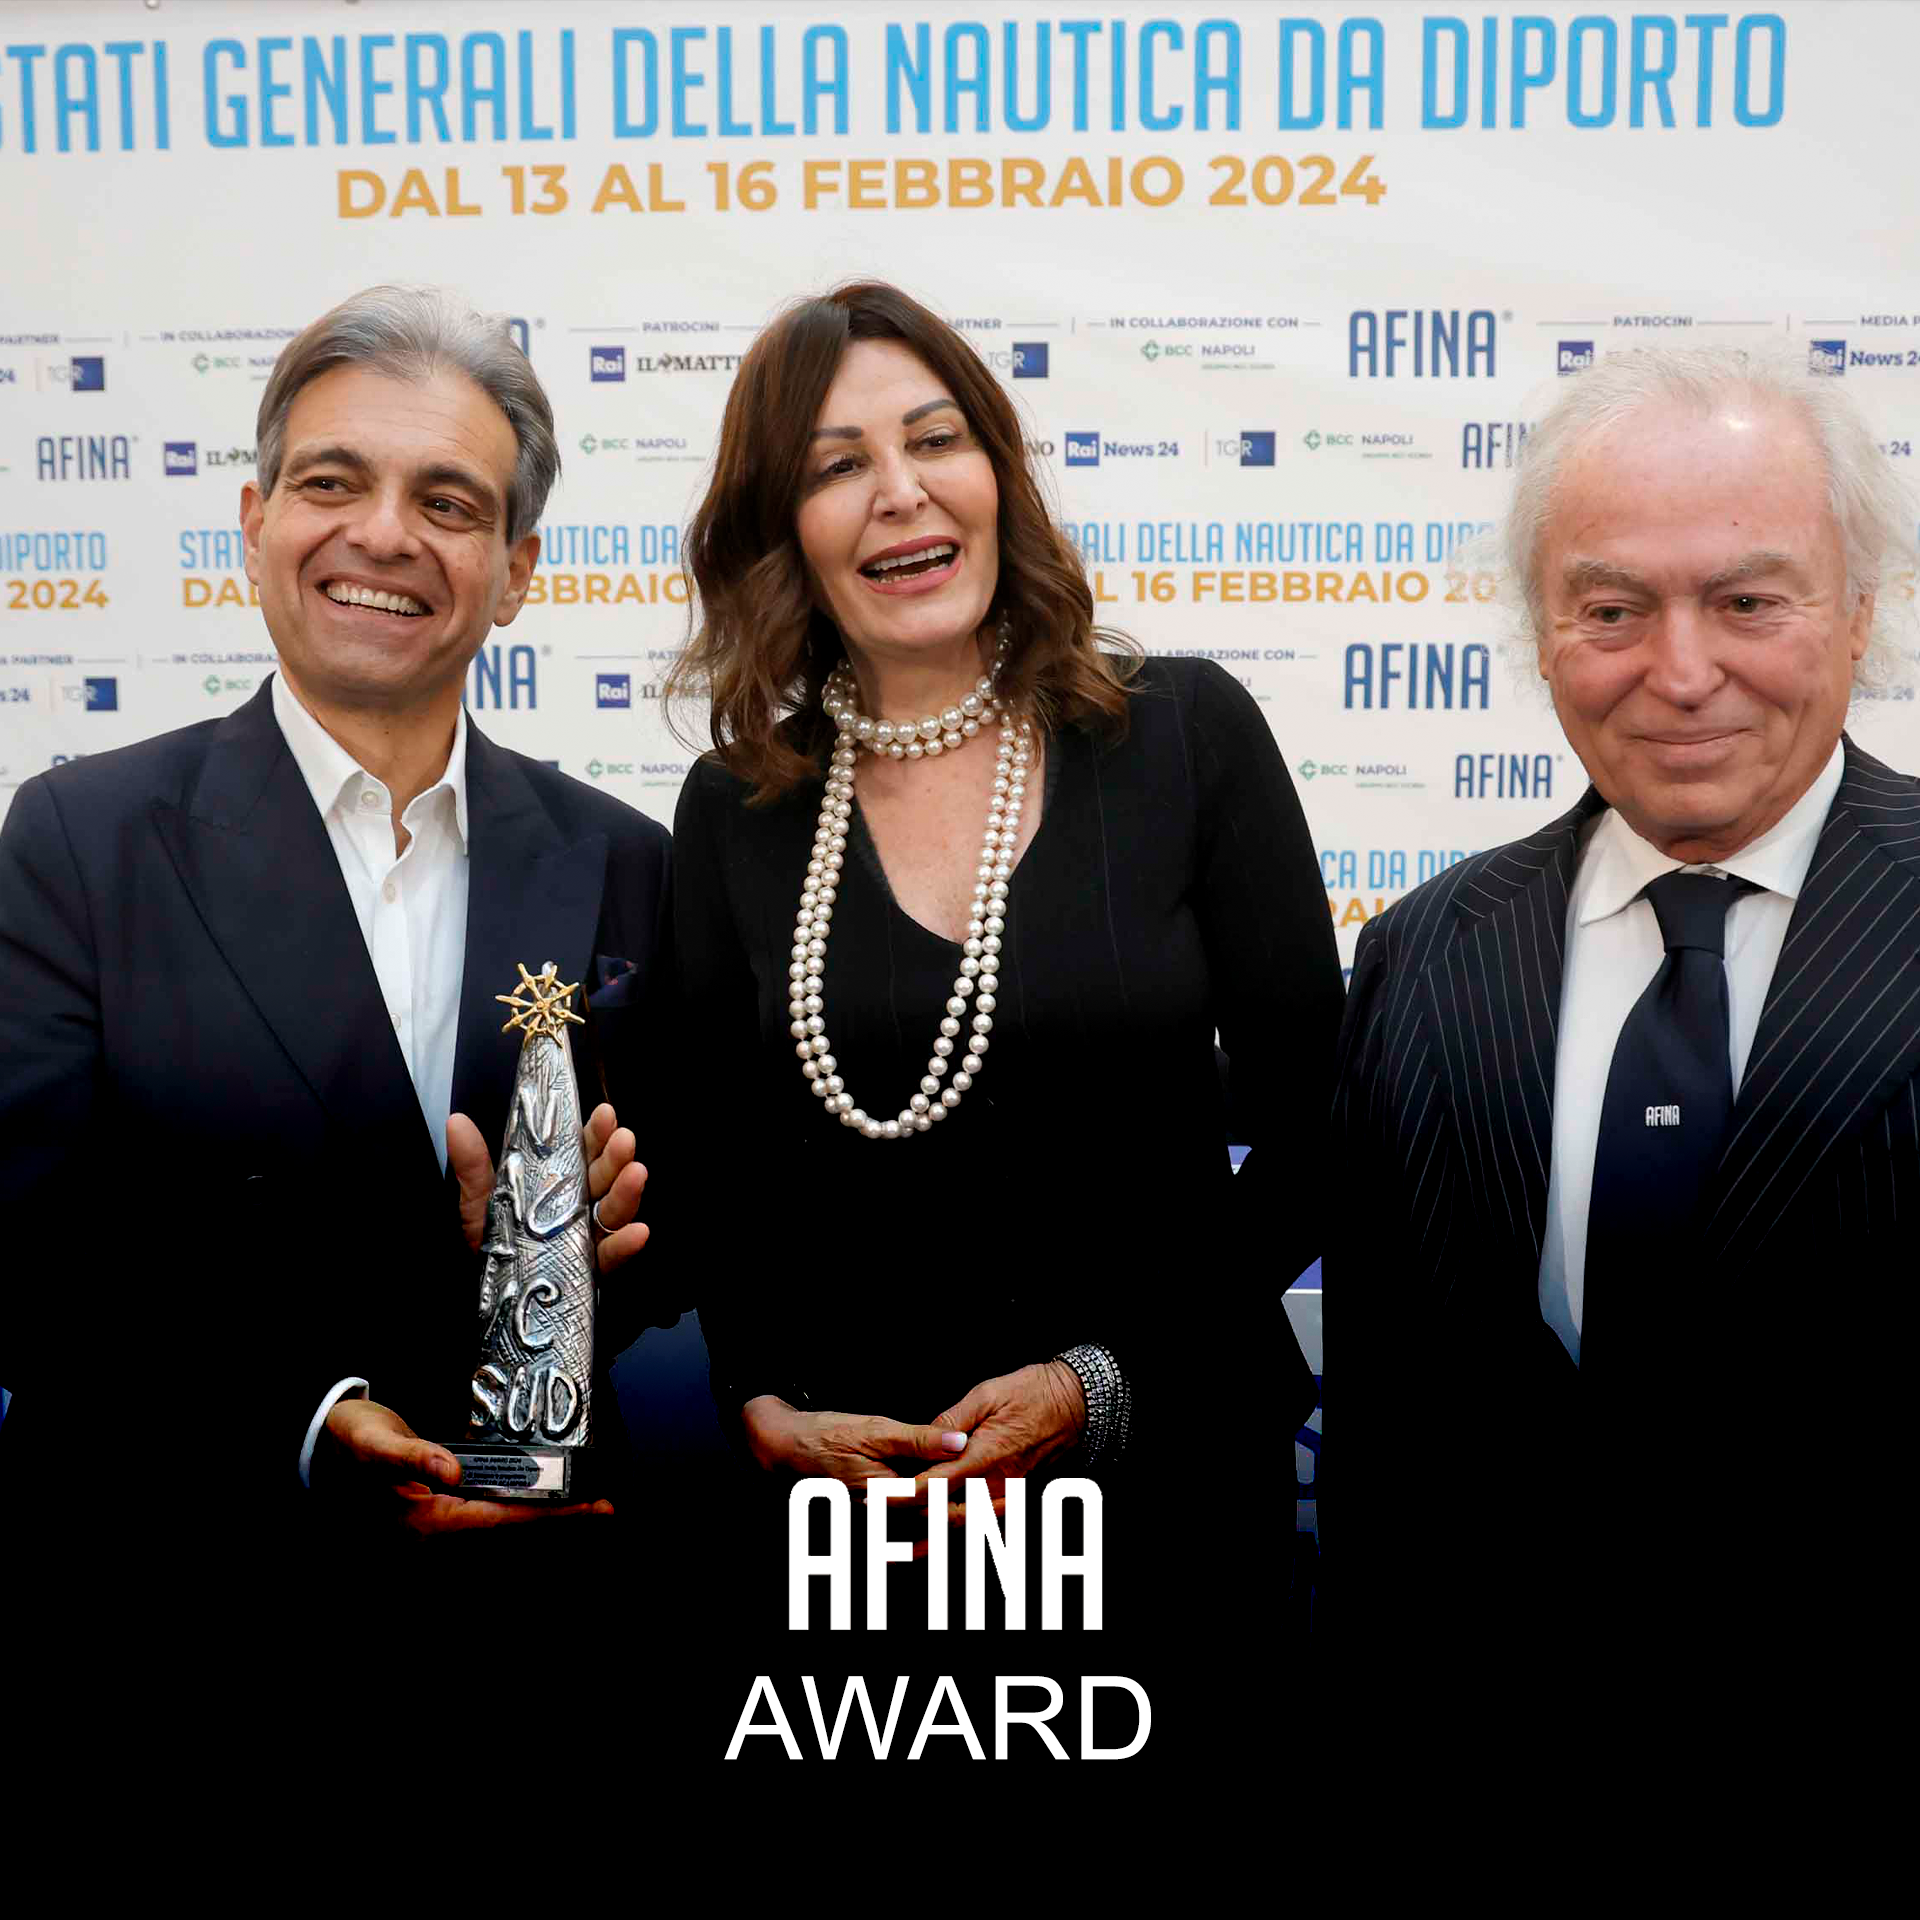 Brunello Acampora's Award